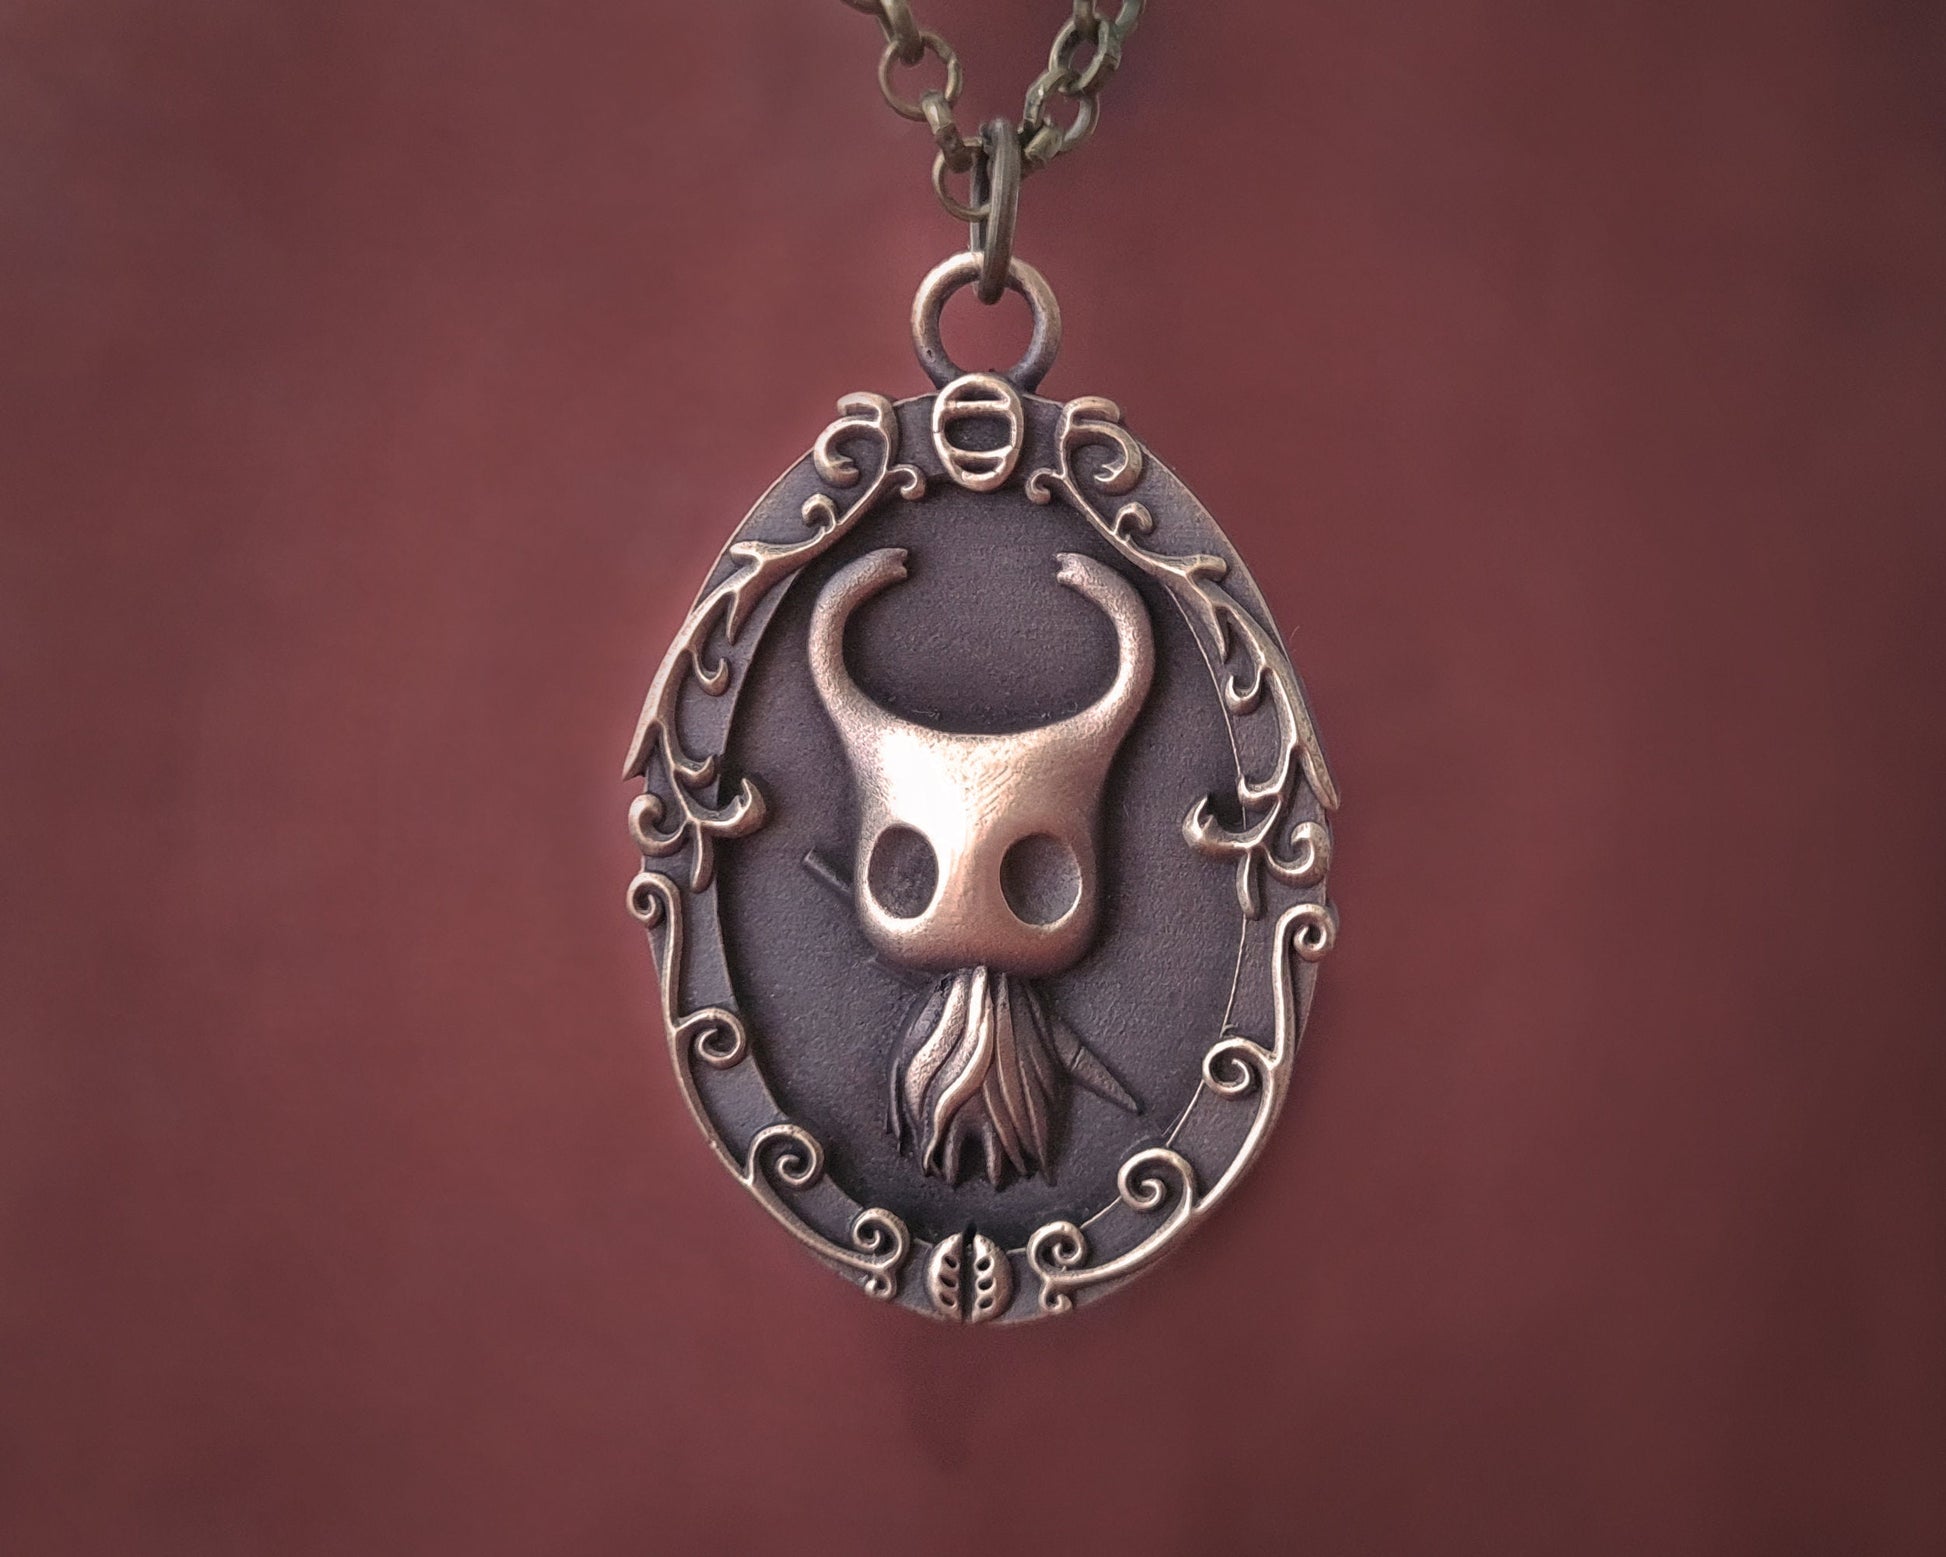 Brass Hollow Knight Pendant Necklace Charm Jewelry Charm - Baldur Jewelry